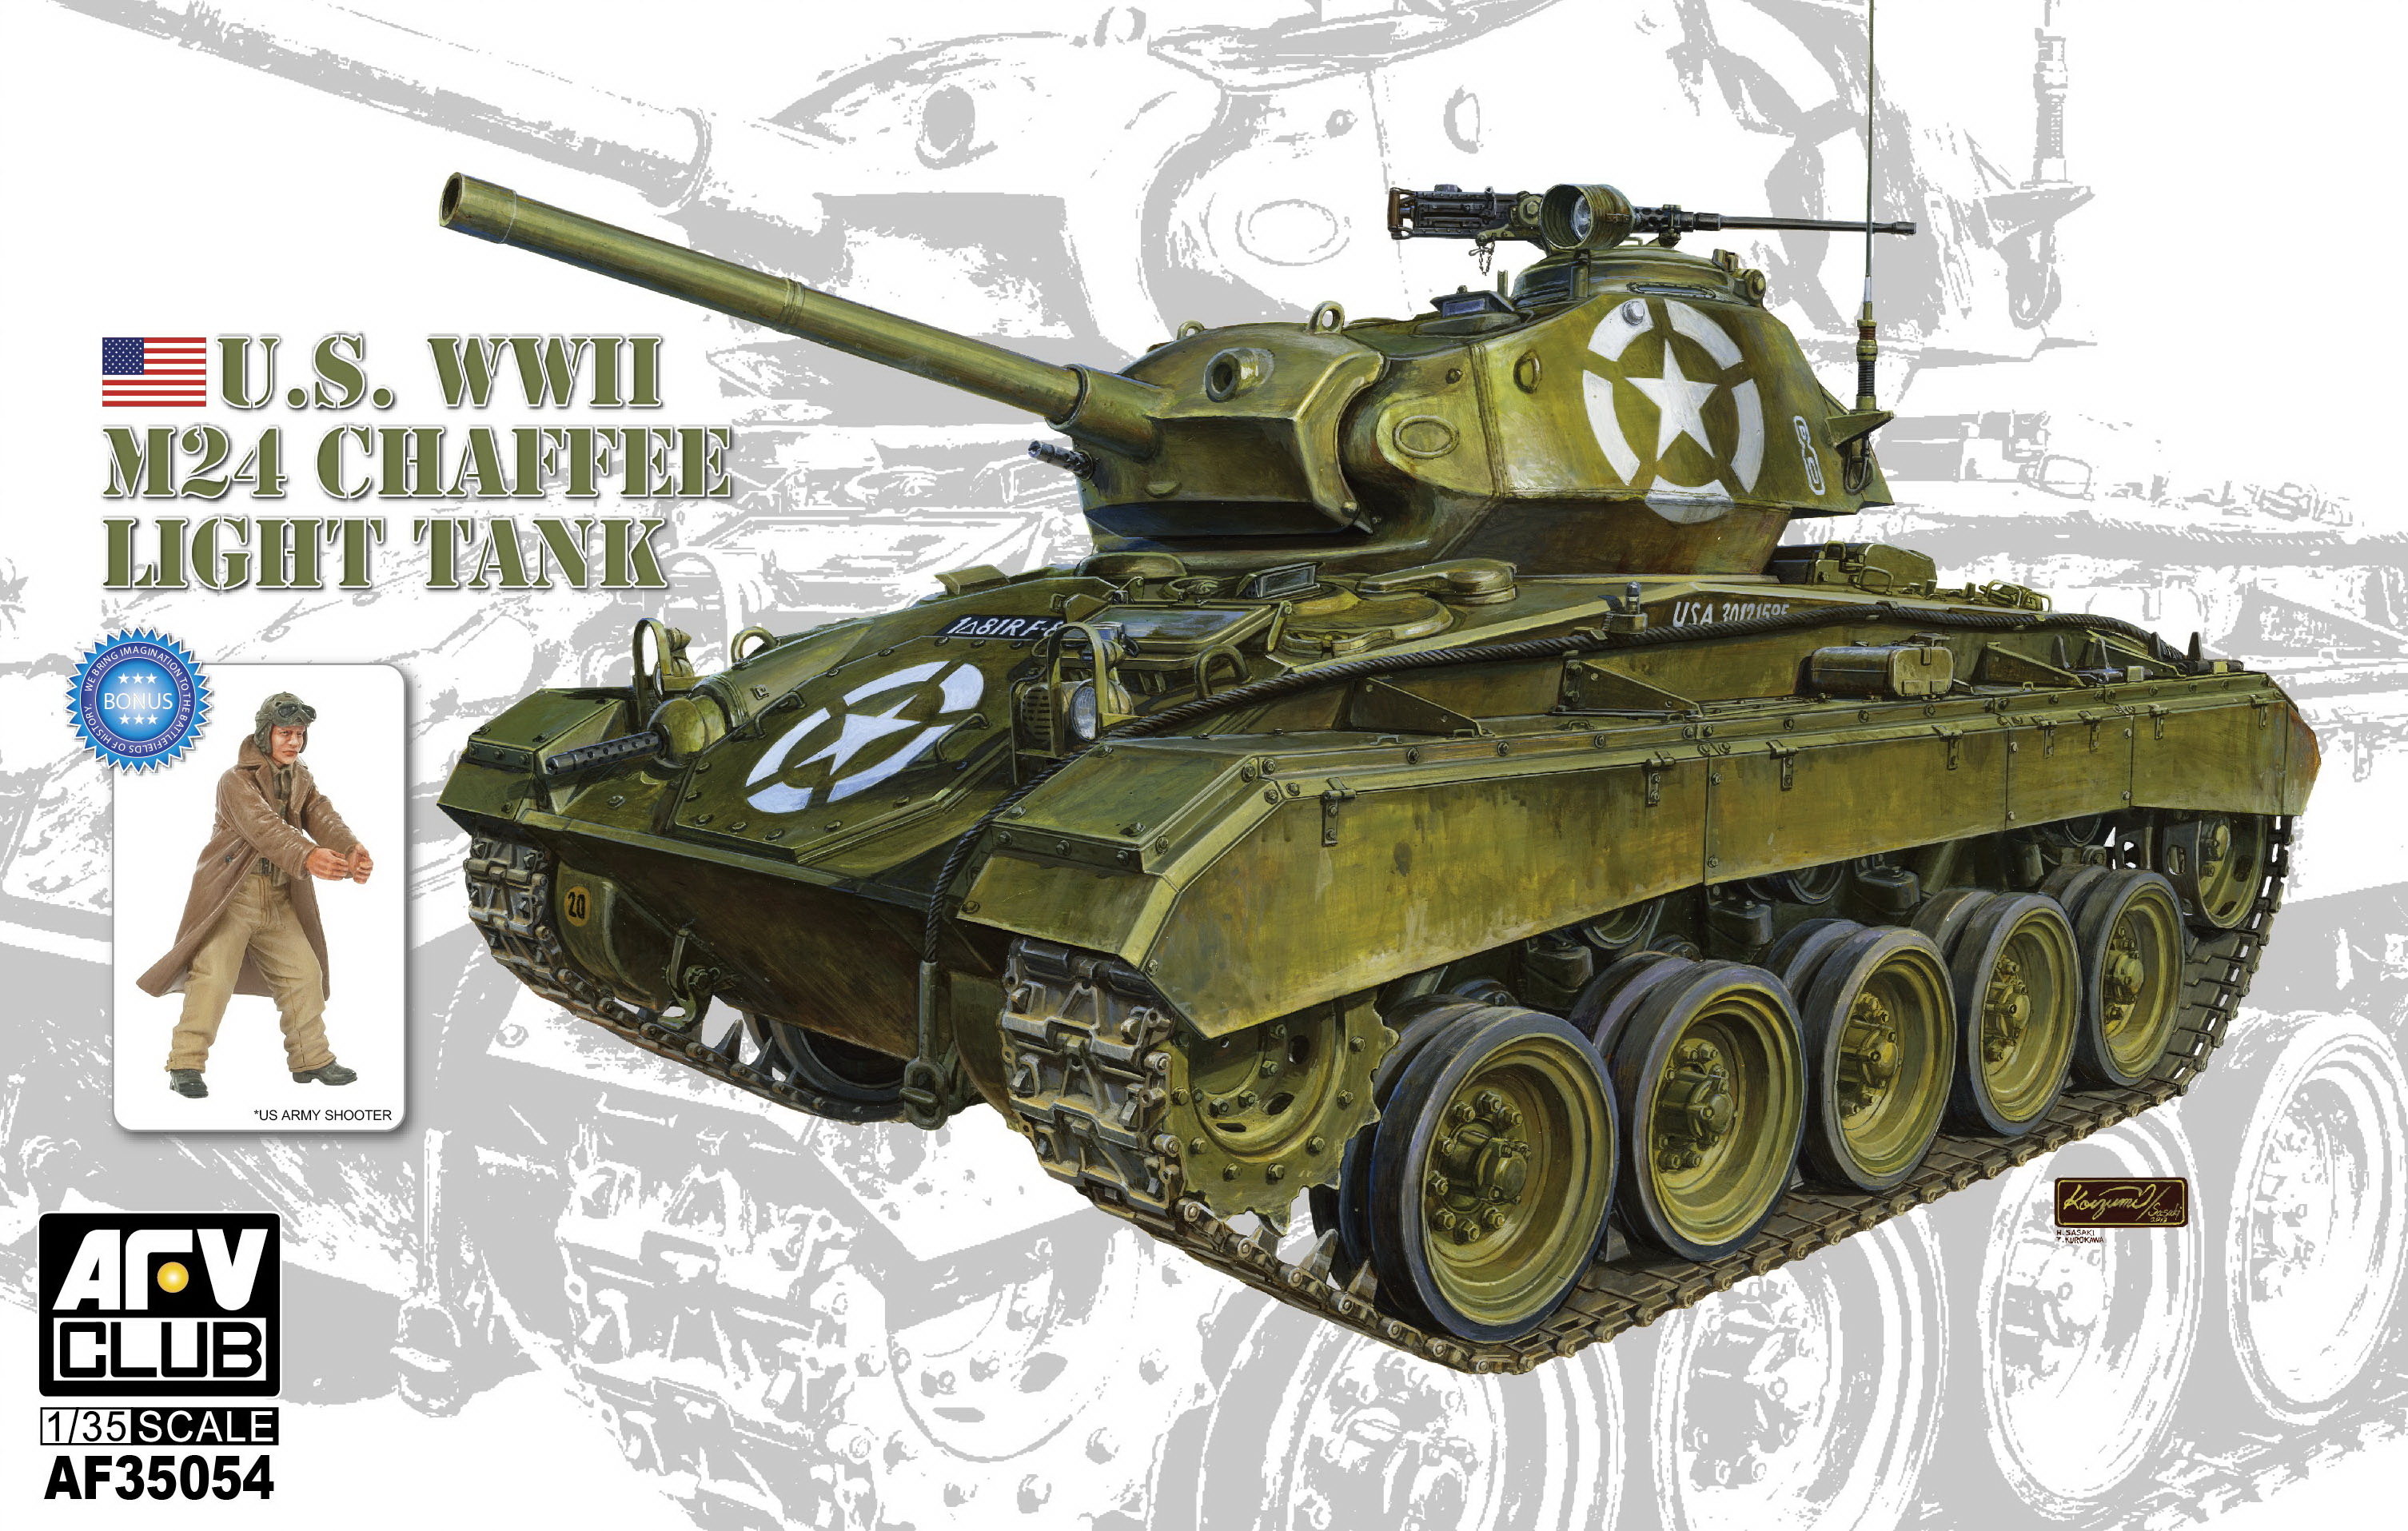 AF35054 M24 Chaffee Light Tank - U.S. WWII